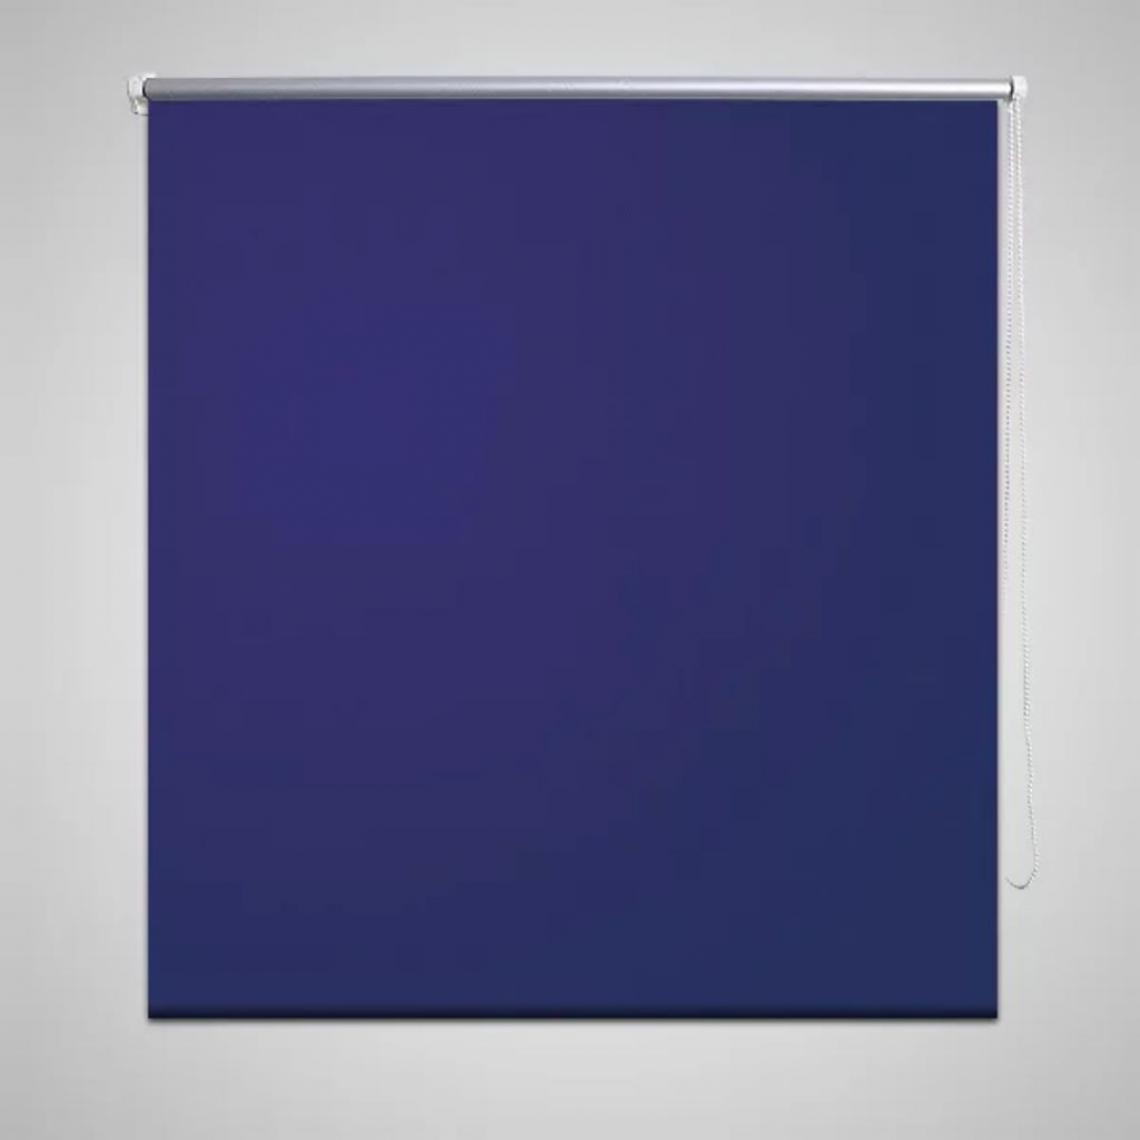 Hucoco - Store enrouleur occultant 120 x 230 cm bleu - Bleu - Store compatible Velux